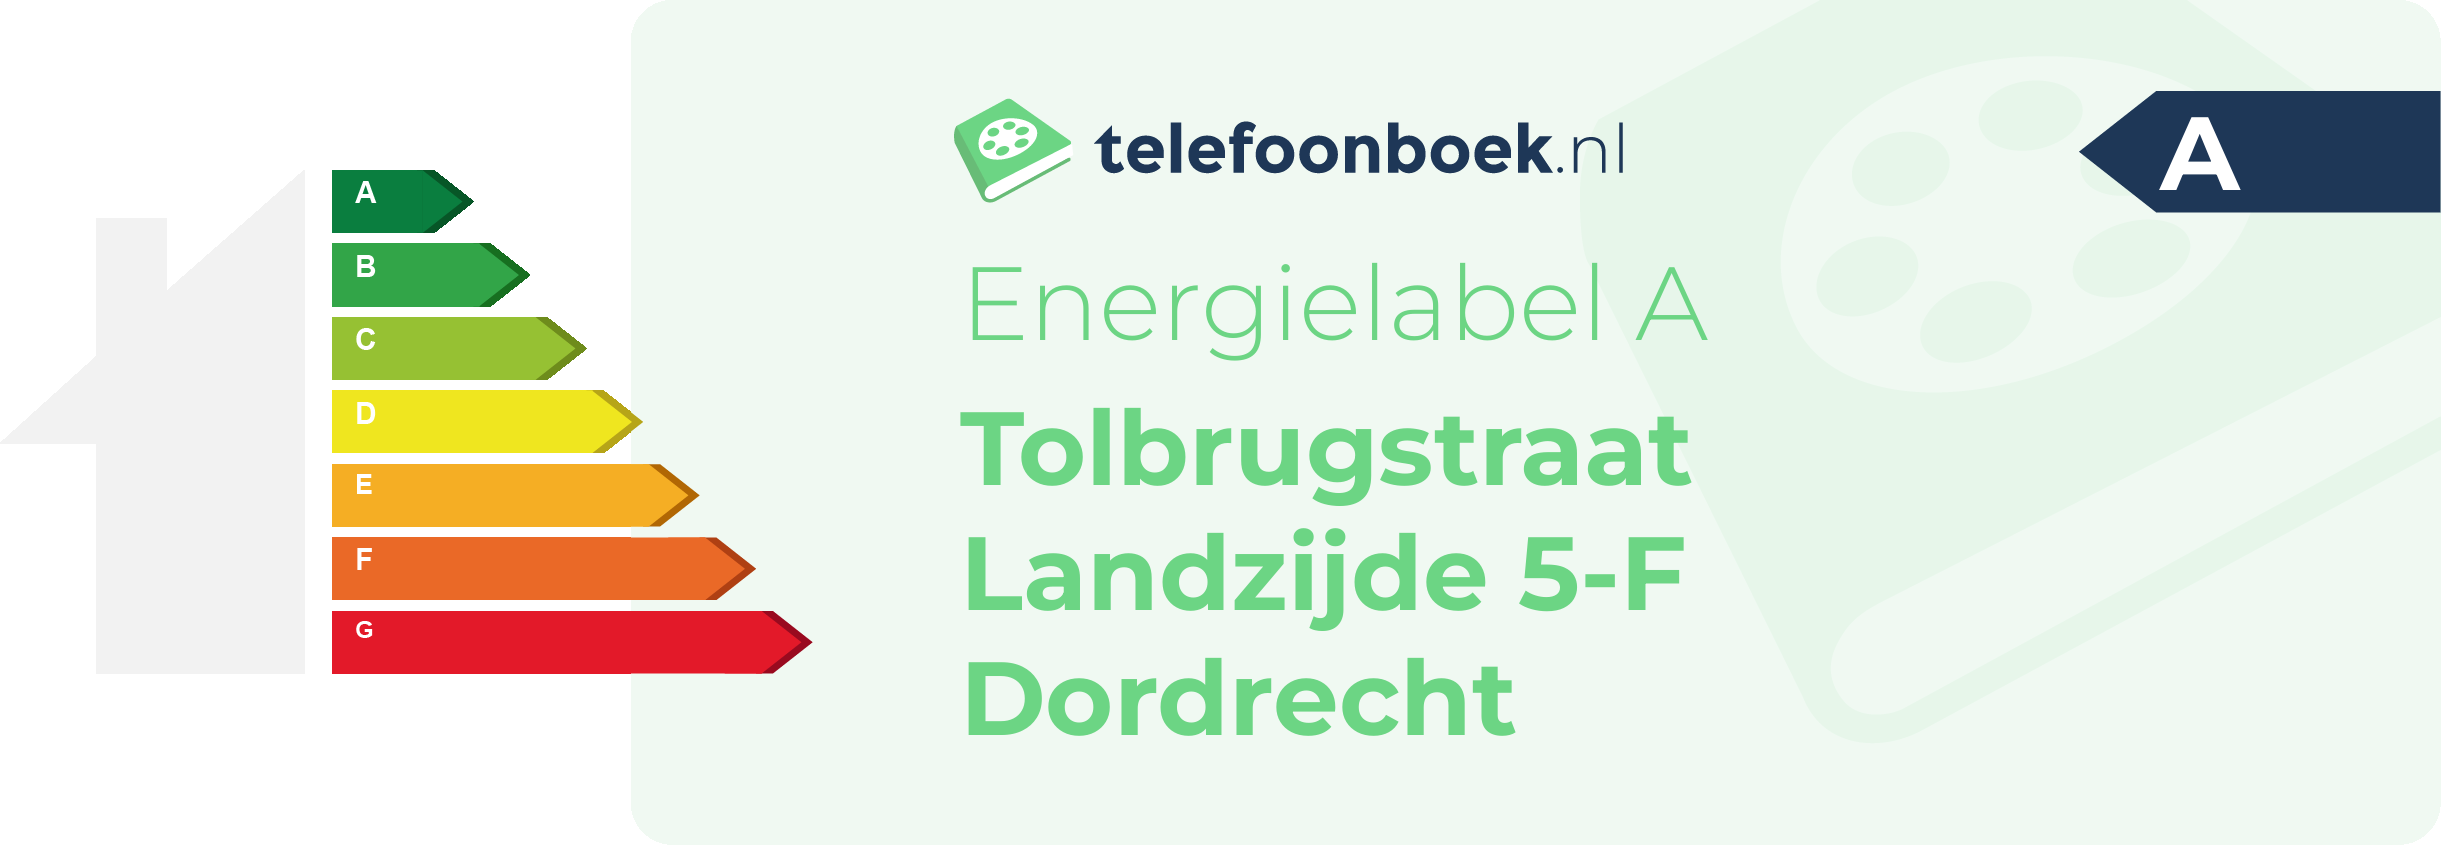 Energielabel Tolbrugstraat Landzijde 5-F Dordrecht